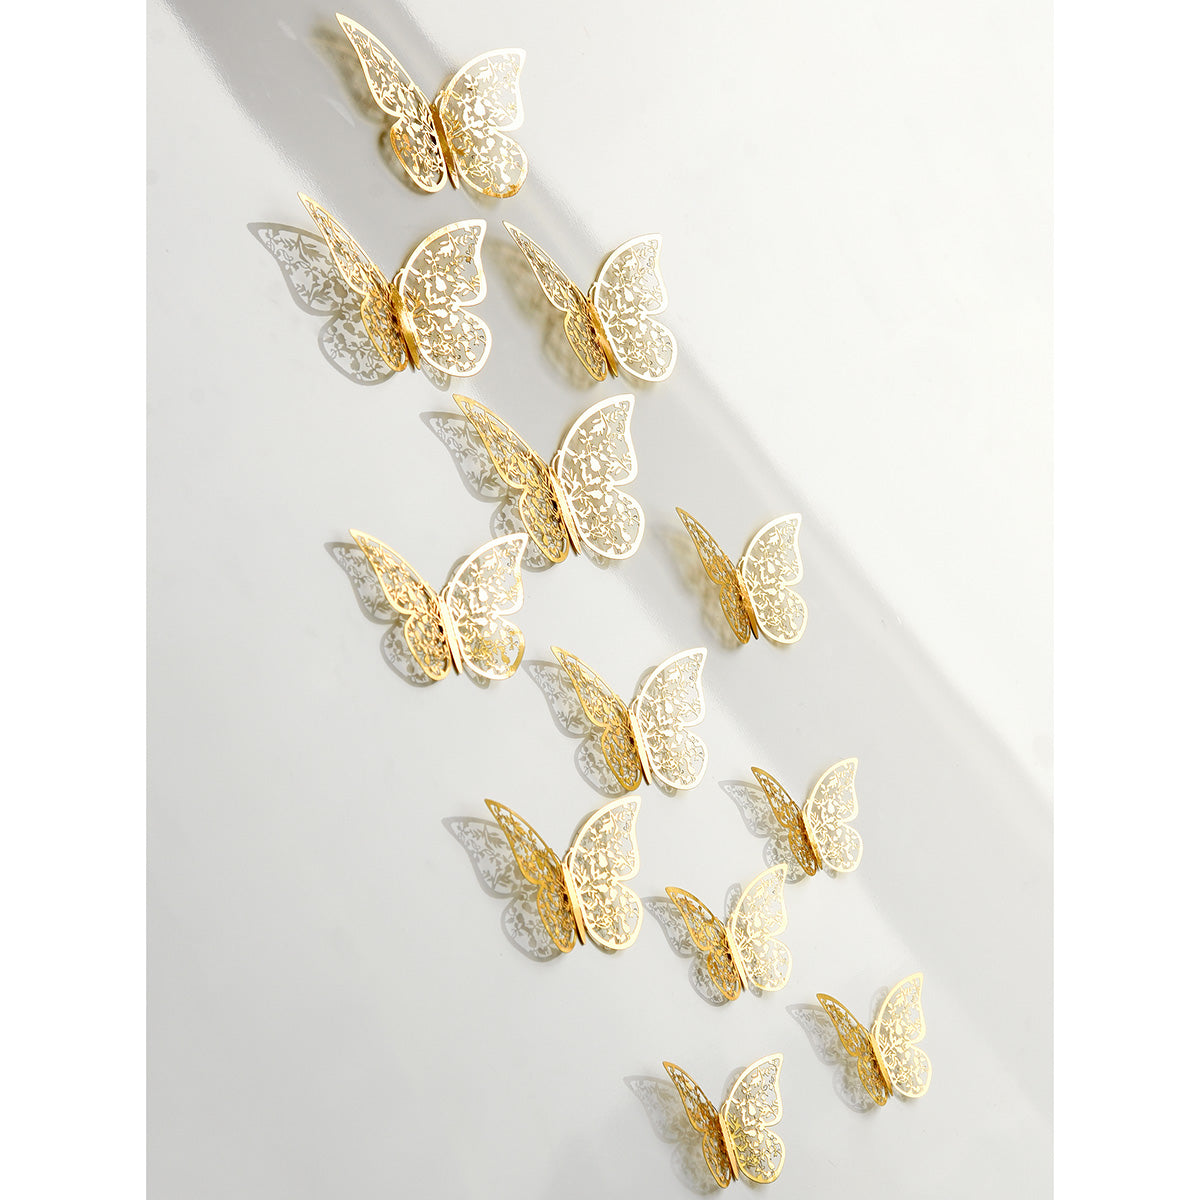 Gold Butterflies Wall Decorations Set - FiveSeasonStuff